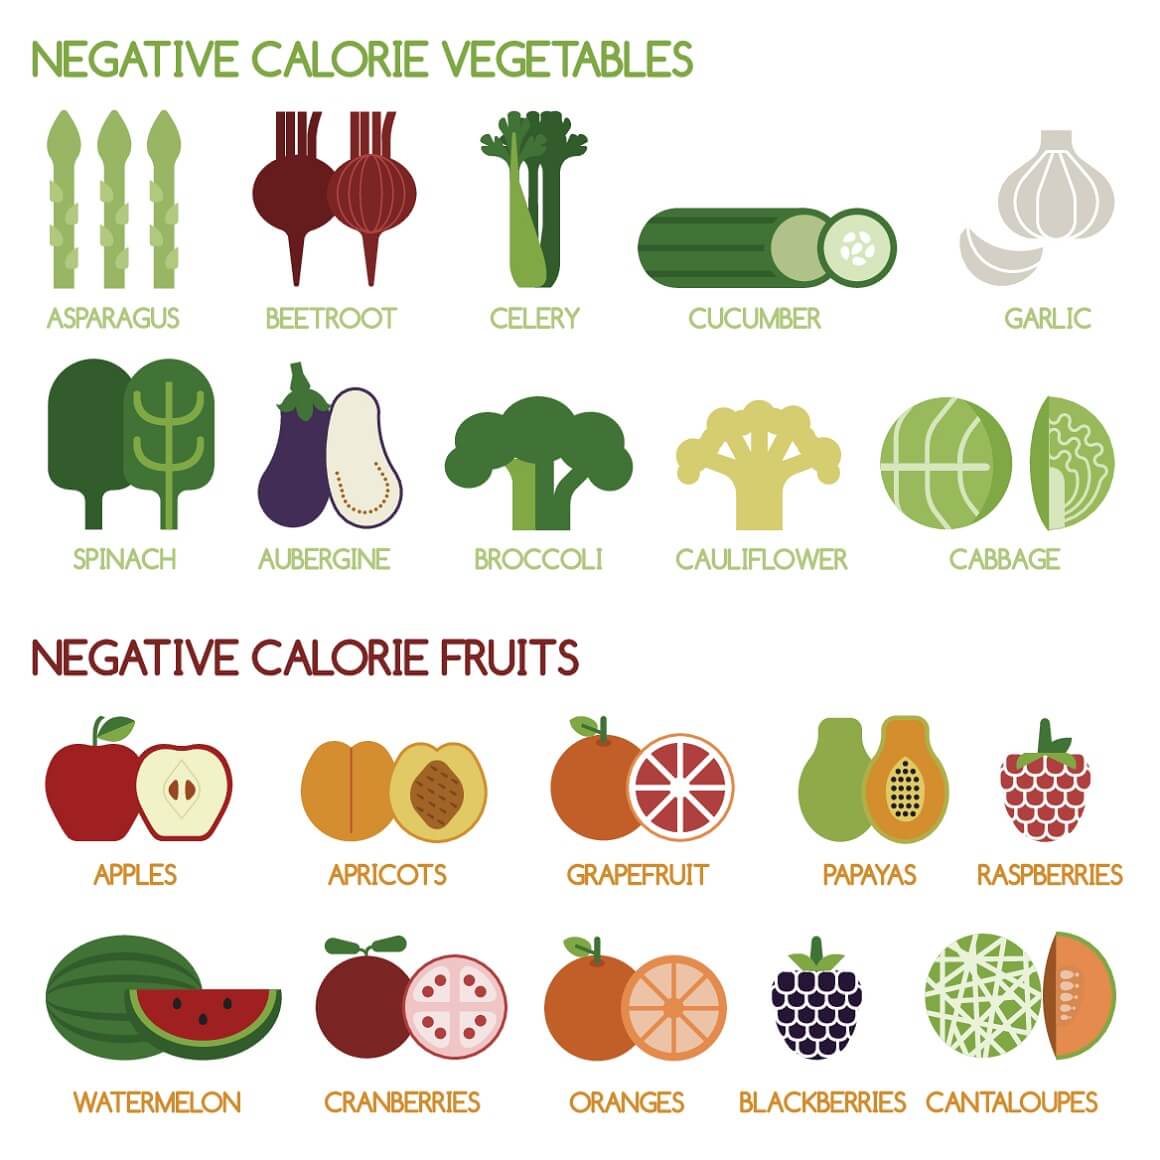 hrana s negativnim kalorijama